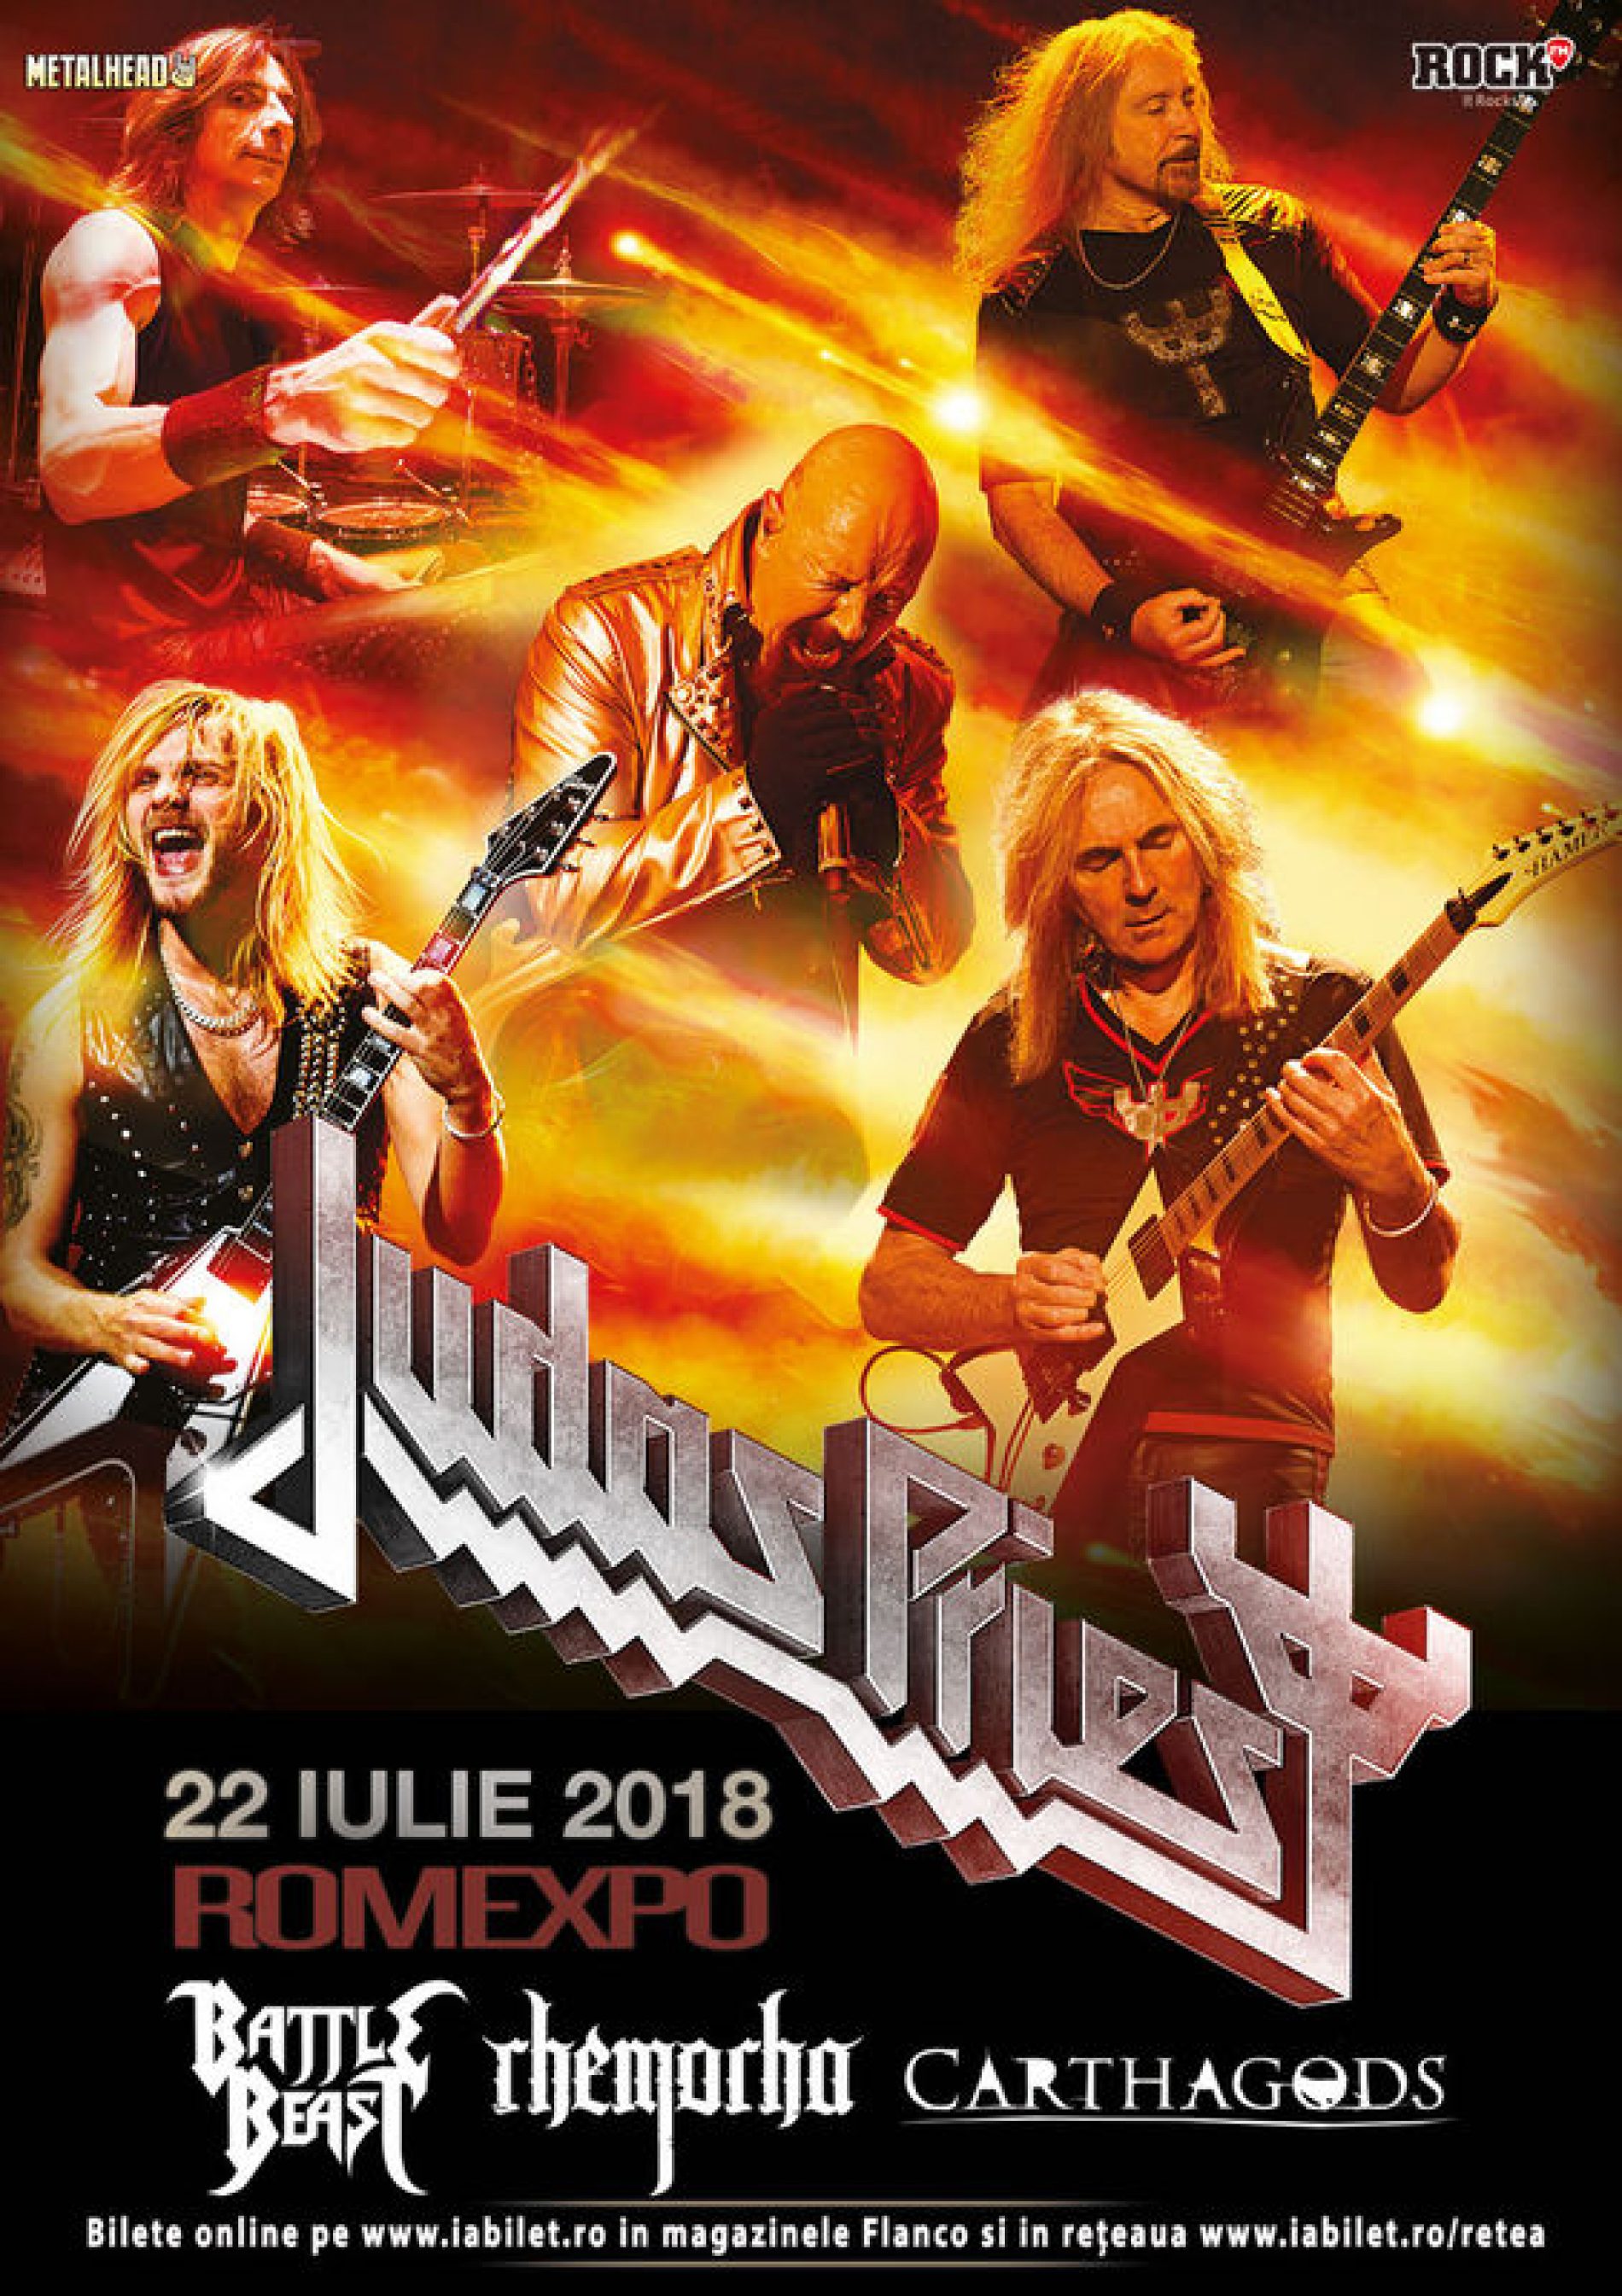 Battle Beast, Rhemorha și Carthagods vor cânta în deschiderea concertului Judas Priest din 22 iulie